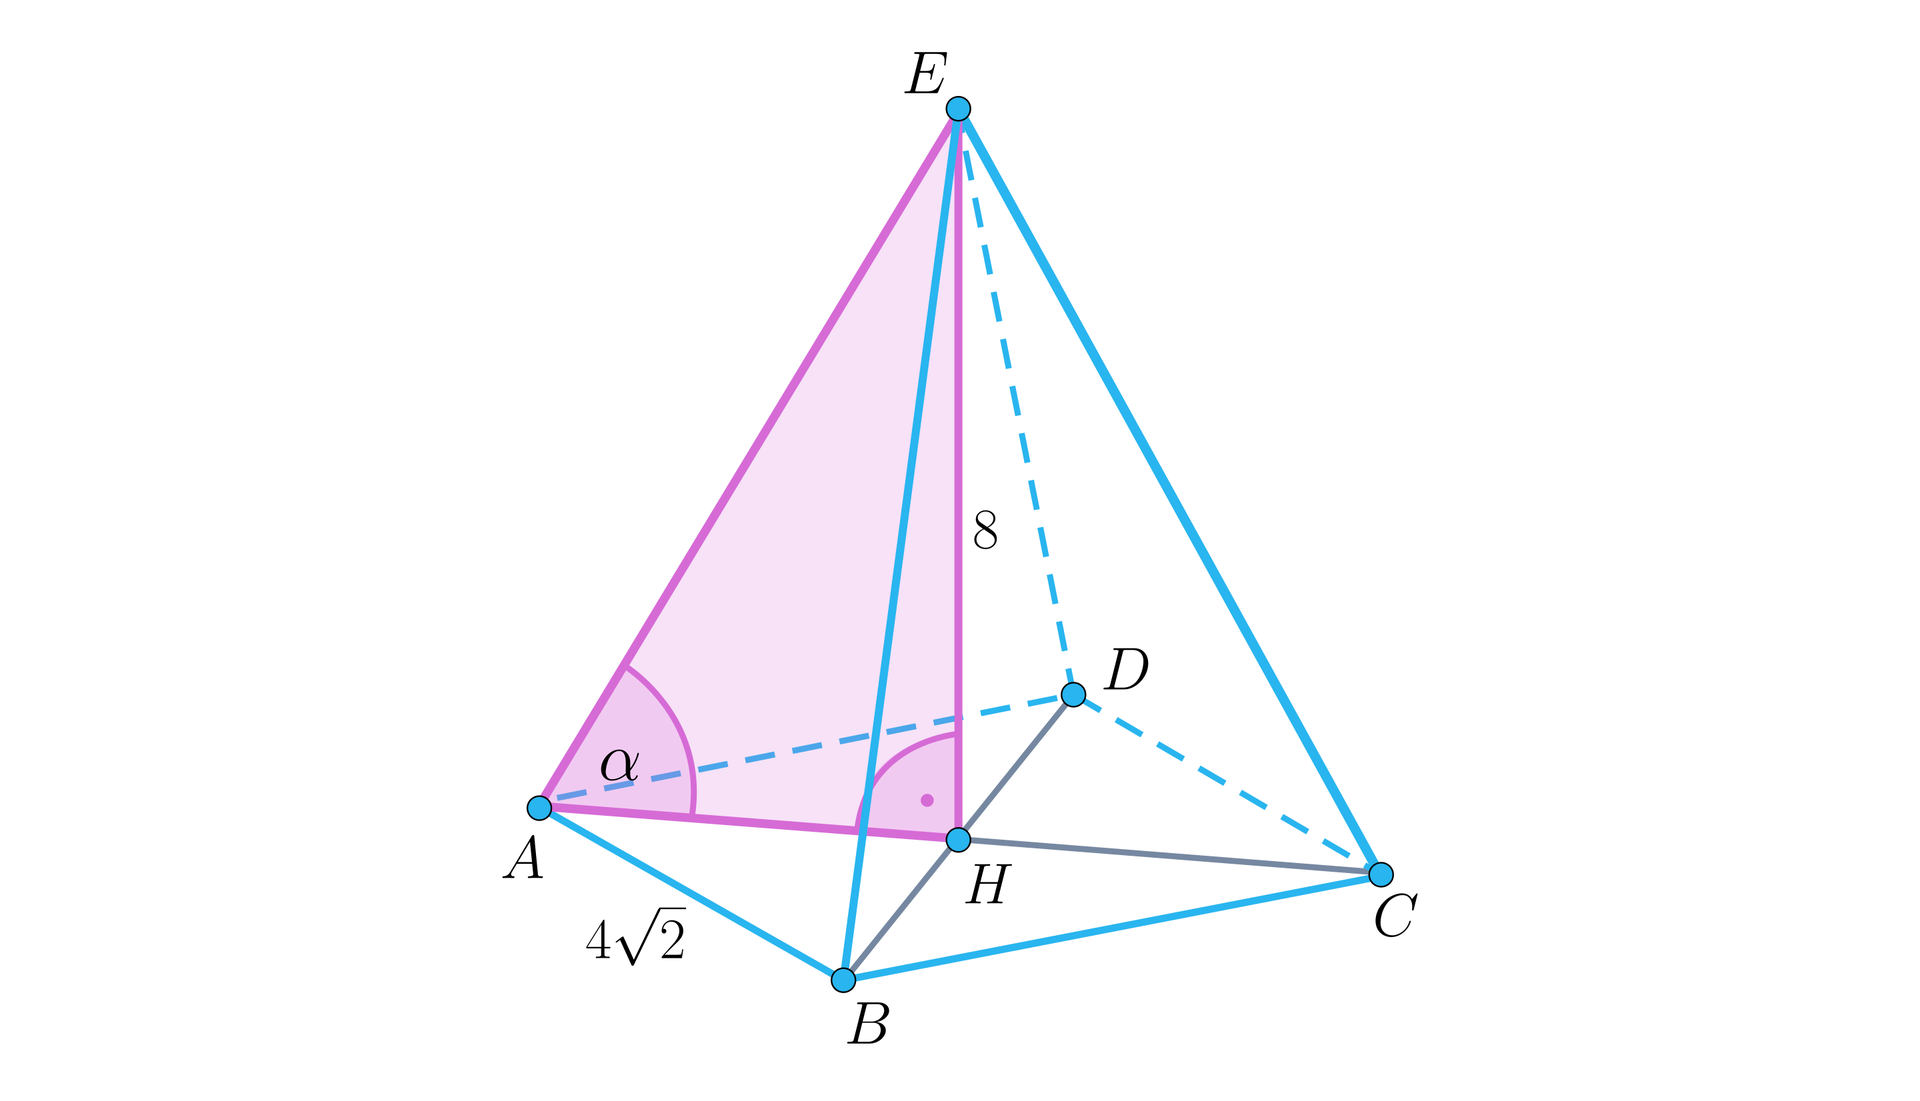 Rysunek przedstawia ostrosłup prawidłowy czworokątny o podstawie A B C D i wierzchołku E. Z wierzchołka upuszczona jest wysokość o długości 8. Na rysunku oznaczone są również przekątna podstawy A C oraz B D. Ich punkt przecięcia jest oznaczony jako H. Jest to też dolny koniec wysokości. Zaznaczone kąty: kąt prosty między wysokością a przekątną A C oraz kąt nachylenia krawędzi A E do przekątnej A C oznaczony jako kąt alfa. Różowym kolorem oznaczony jest trójkąt prostokątny A H E będący połową przekroju ostrosłupa względem przekątnej A C. Krawędź A B ostrosłupa ma długość 4 pierwiastki z dwóch.